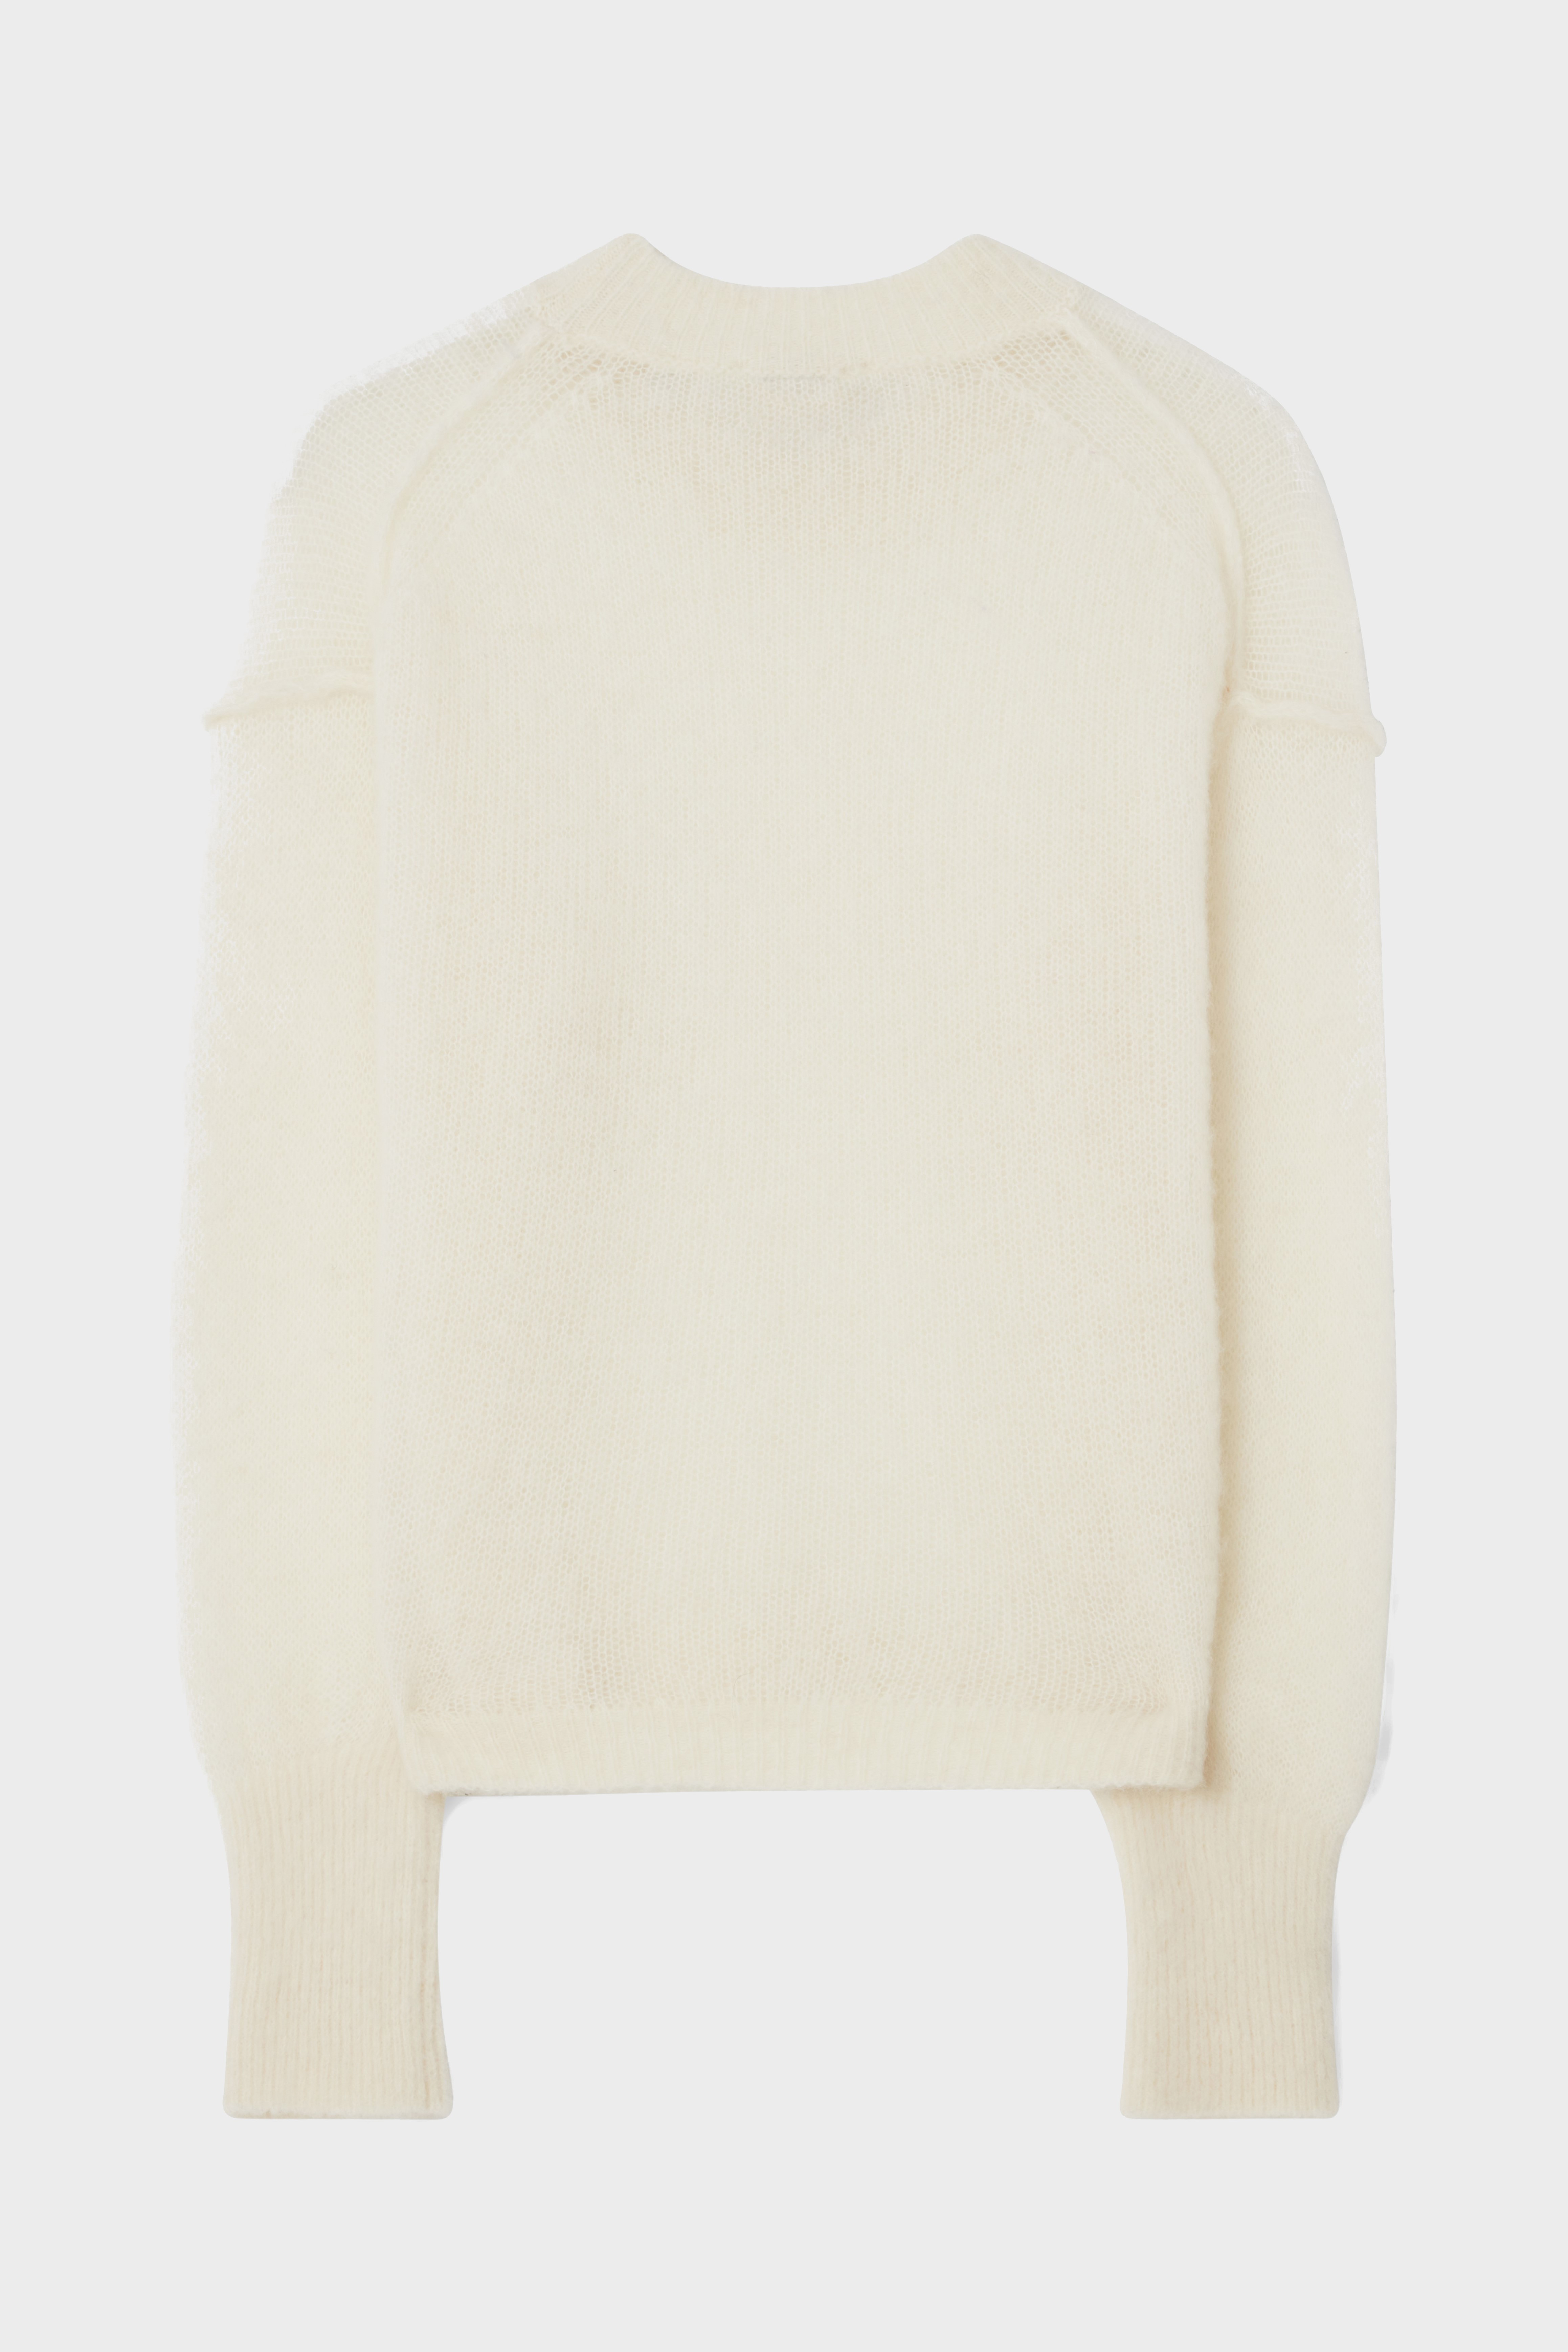 DAGMAR Brushed Alpaca Knit Sweater in Off White M